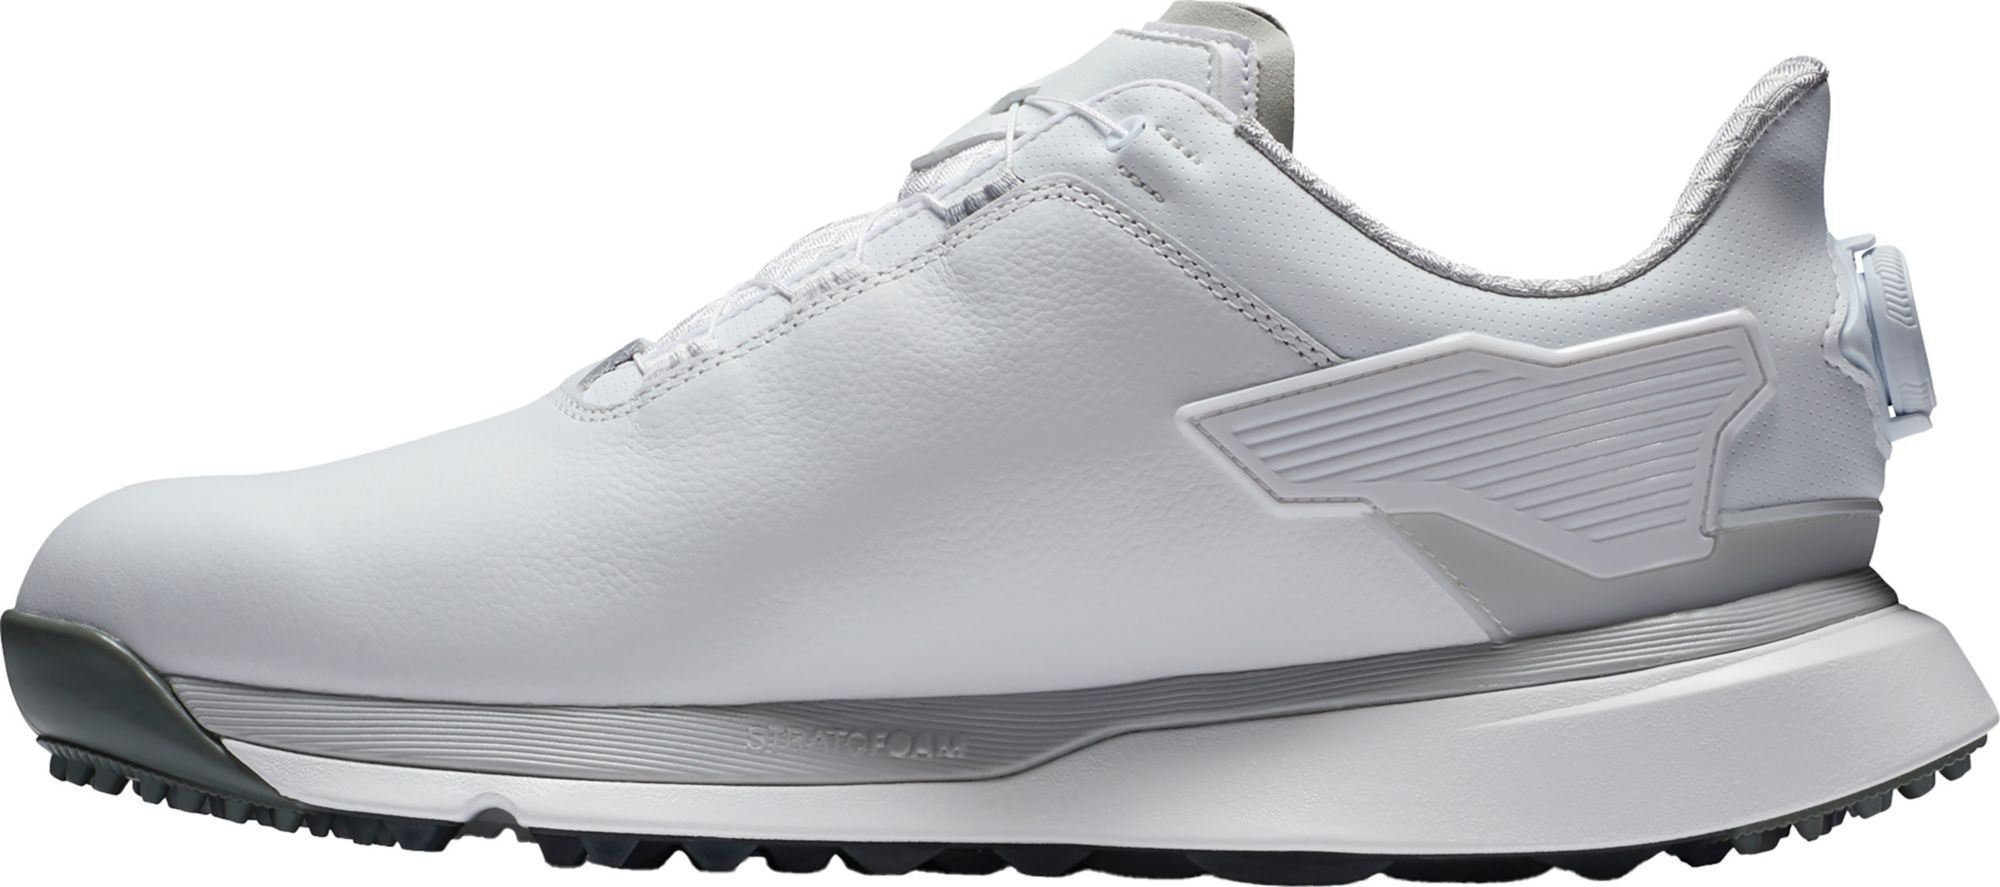 FootJoy Men's Pro SLX BOA Golf Shoes